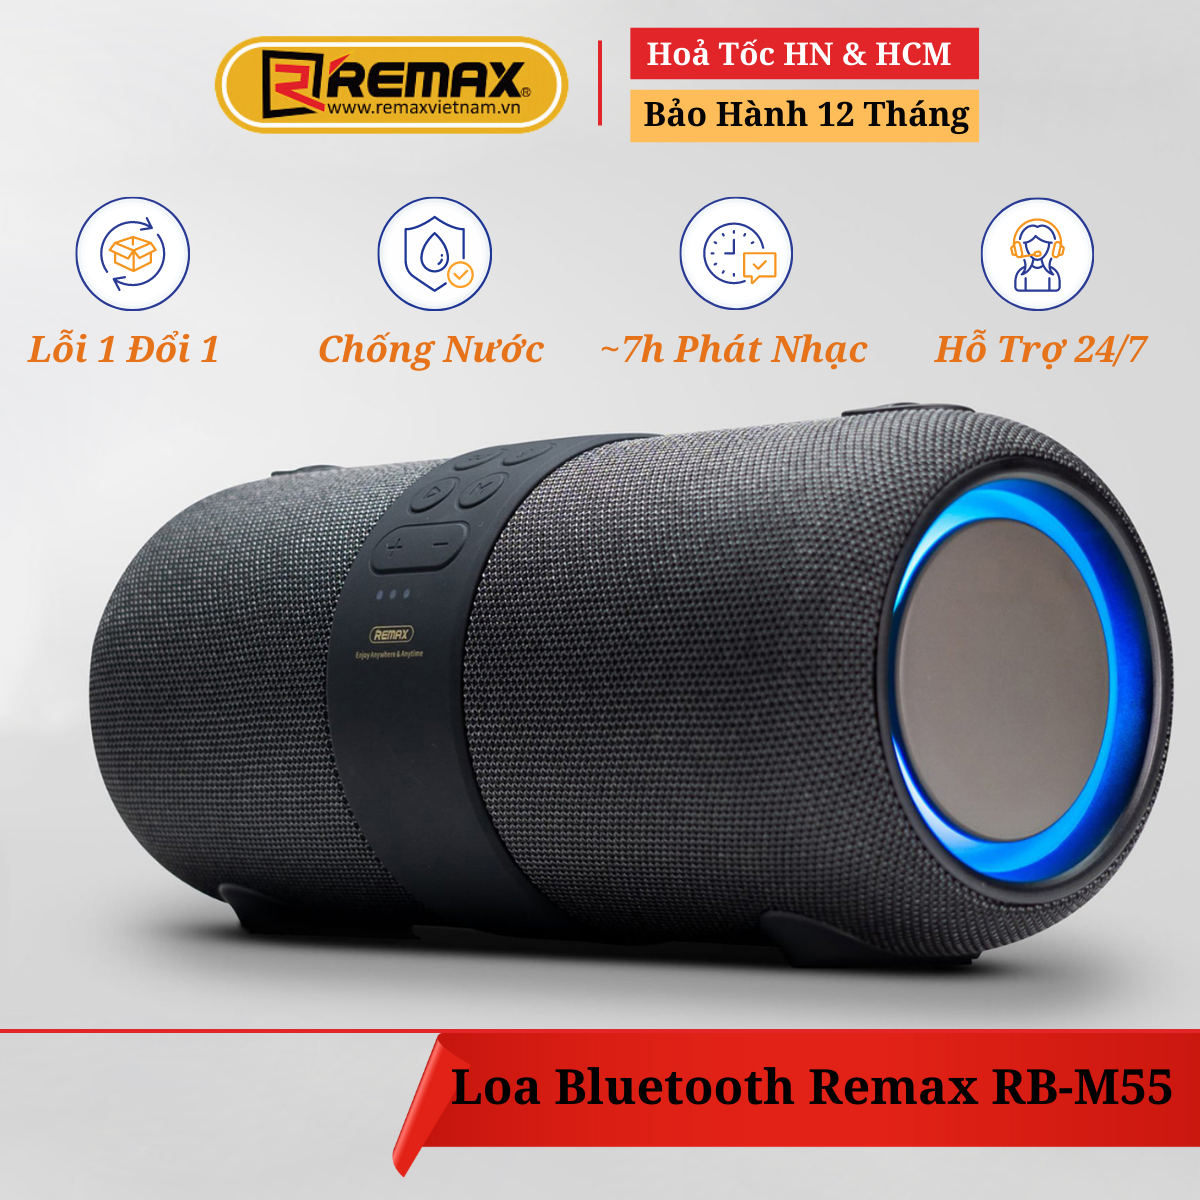 Loa Bluetooth du lịch chống nước chính hãng Remax RB-M55 - Âm bass mạnh mẽ kết hợp đèn Led RGB. Hỗ trợ đầu vào Thẻ Nhờ và Cổng 3.5mm - Hàng Chính Hãng Remax bảo hành 12 tháng 1 đổi 1